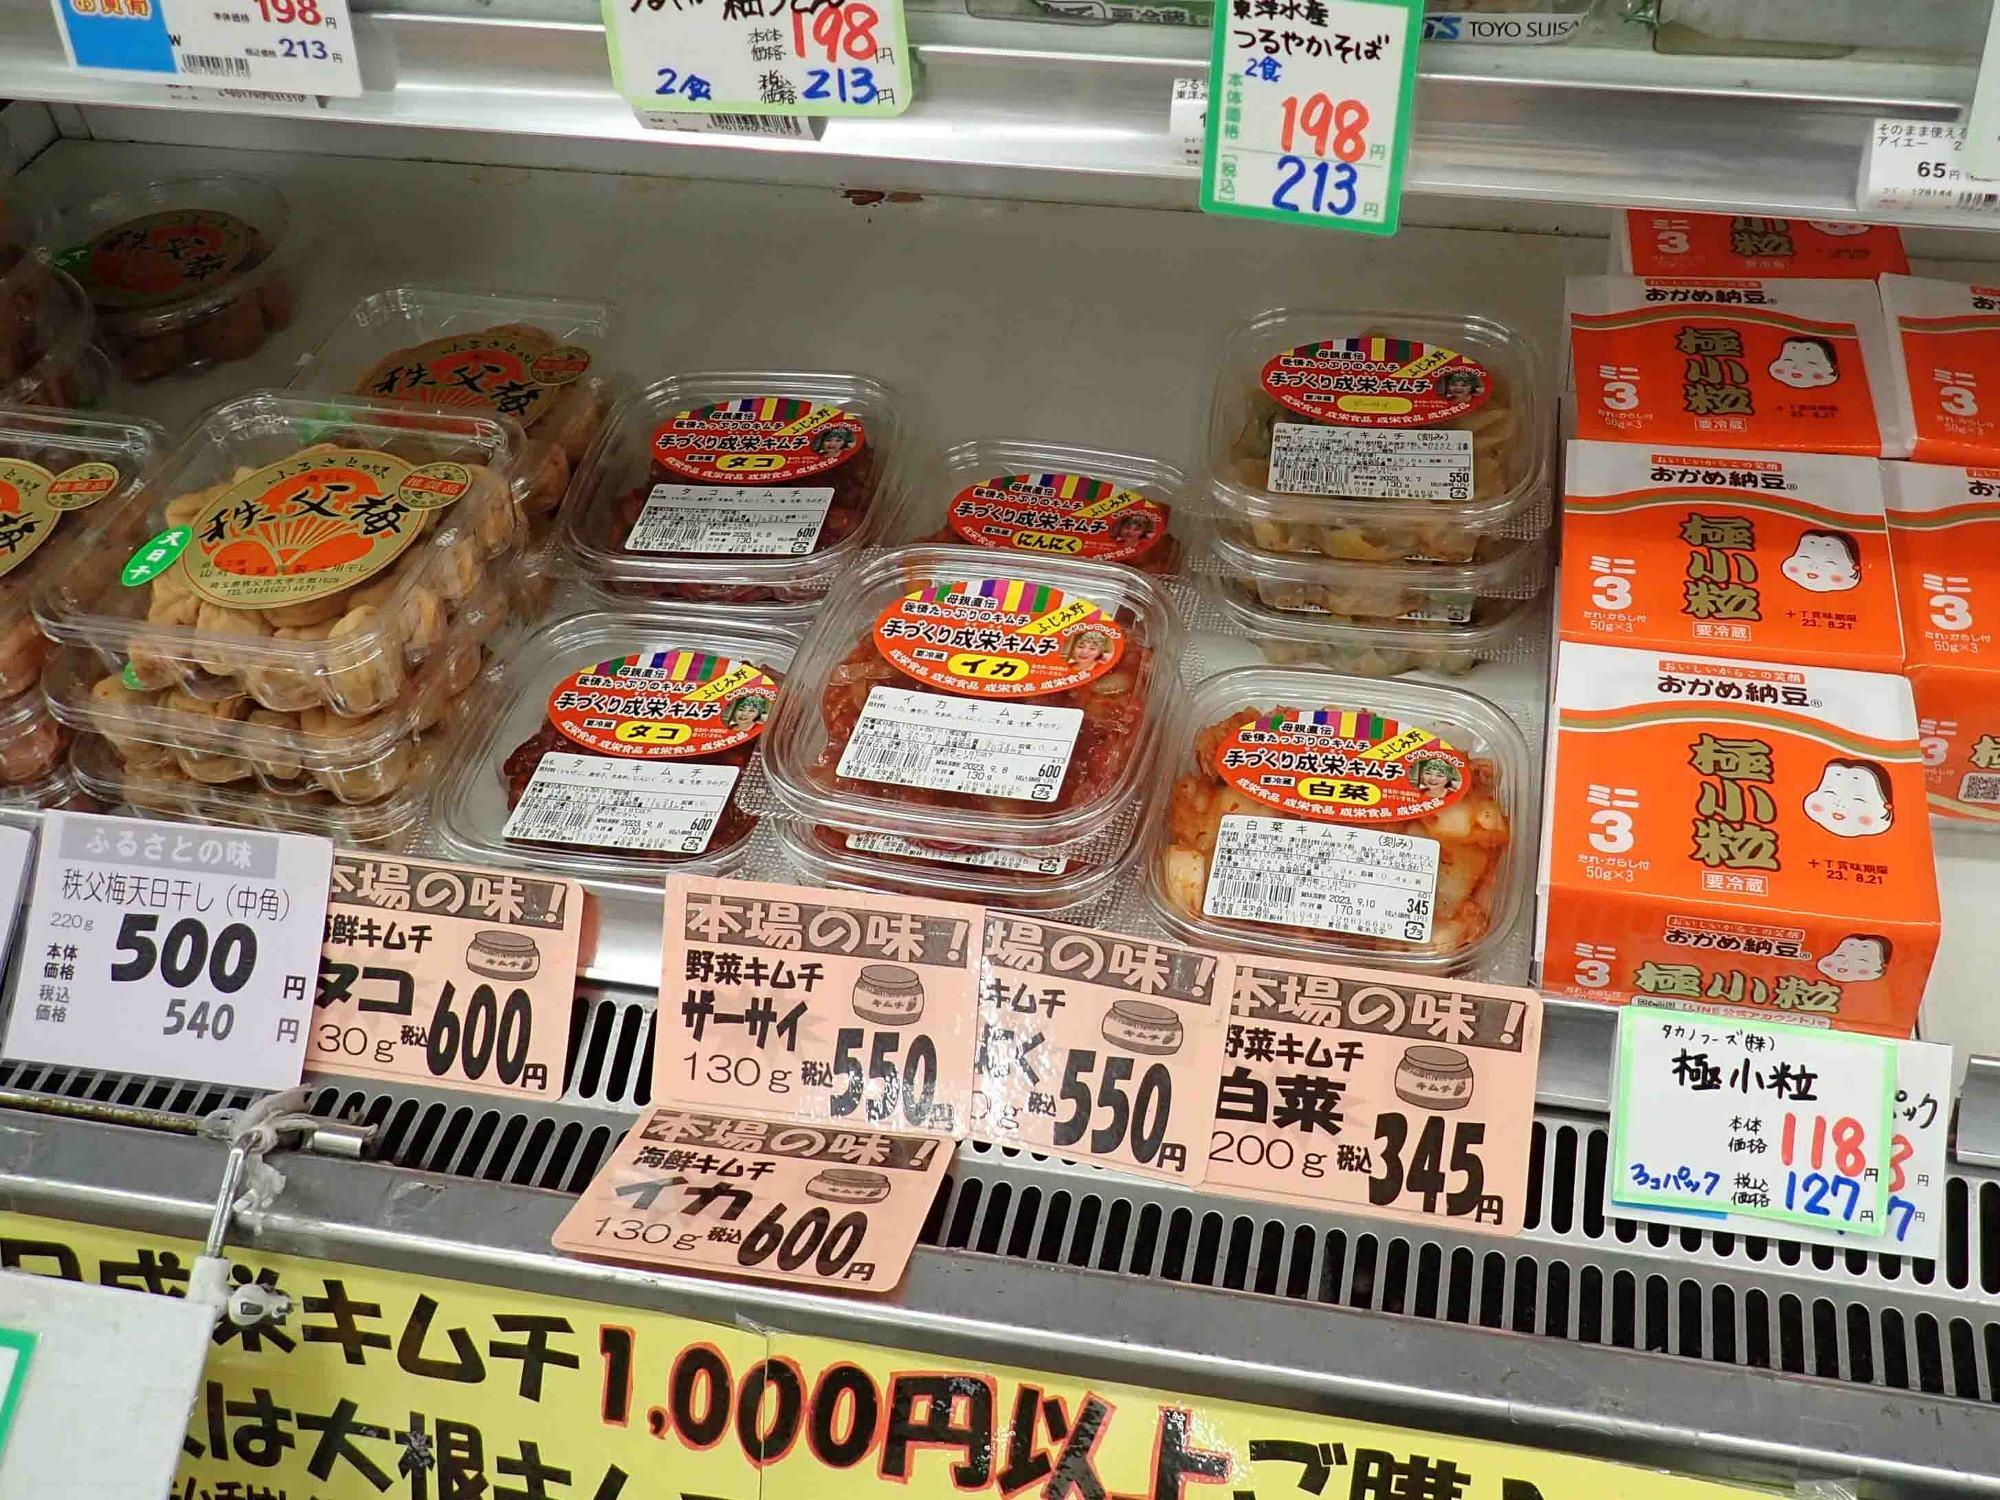 「成栄食品」は埼玉県ふじみ野市にある手づくりキムチのお店で、テレビでも取り上げられたことがある人気店です